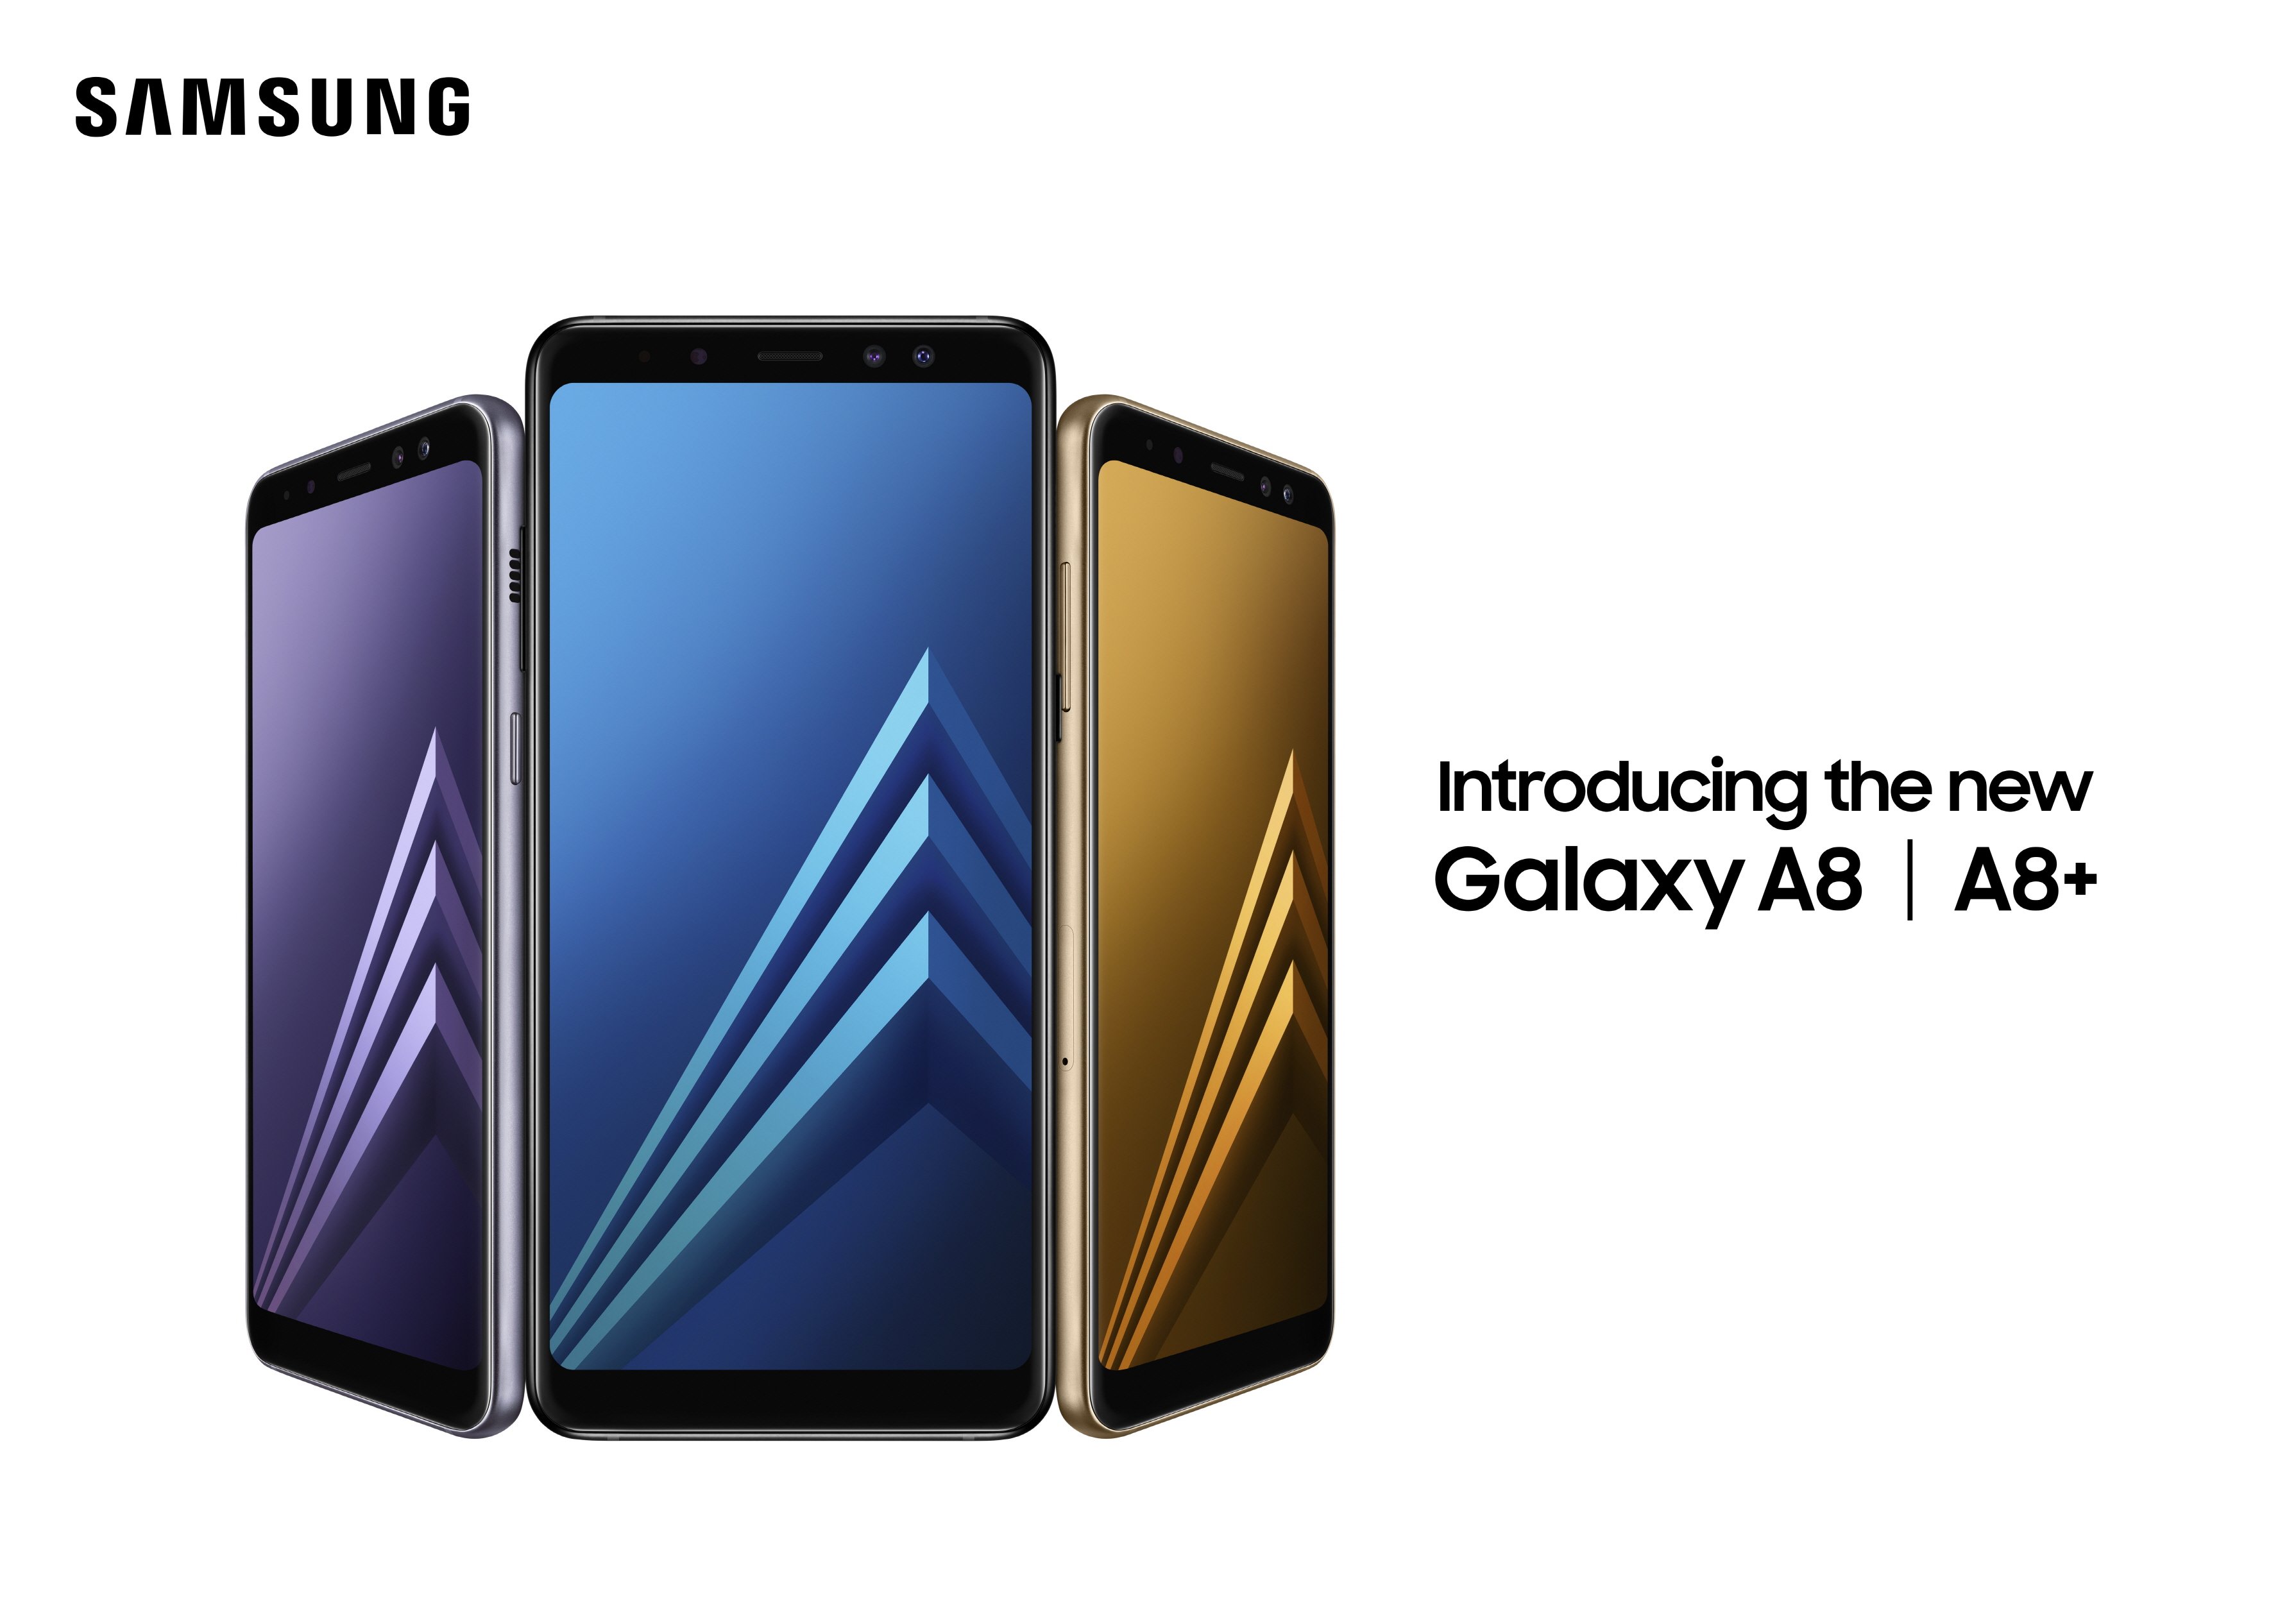 Samsung Galaxy A8 (2018) and Galaxy A8+ (2018)